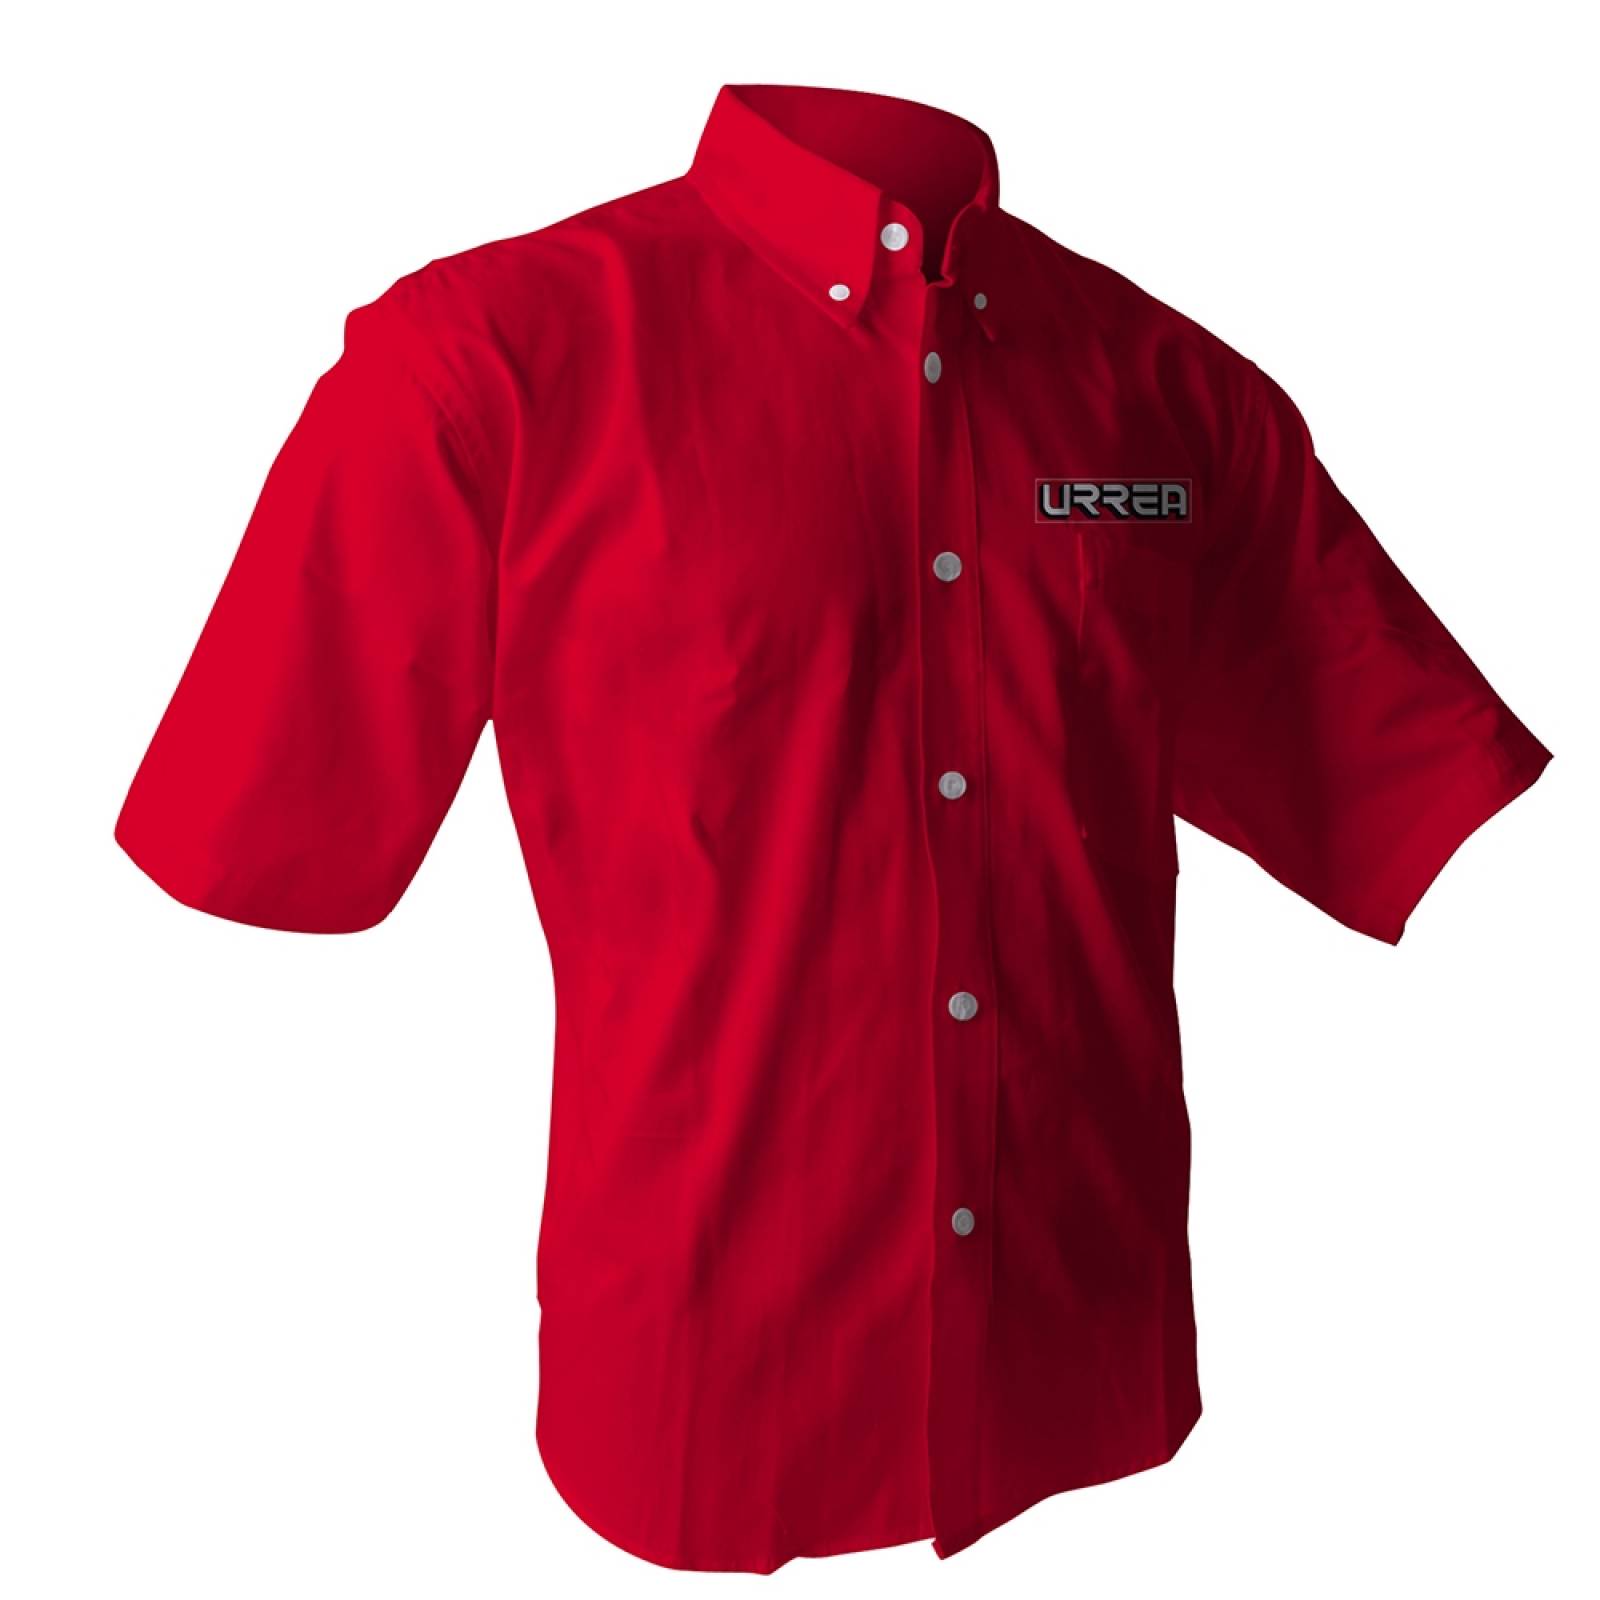 Camisa roja manga corta  talla XL CAMC201X Urrea